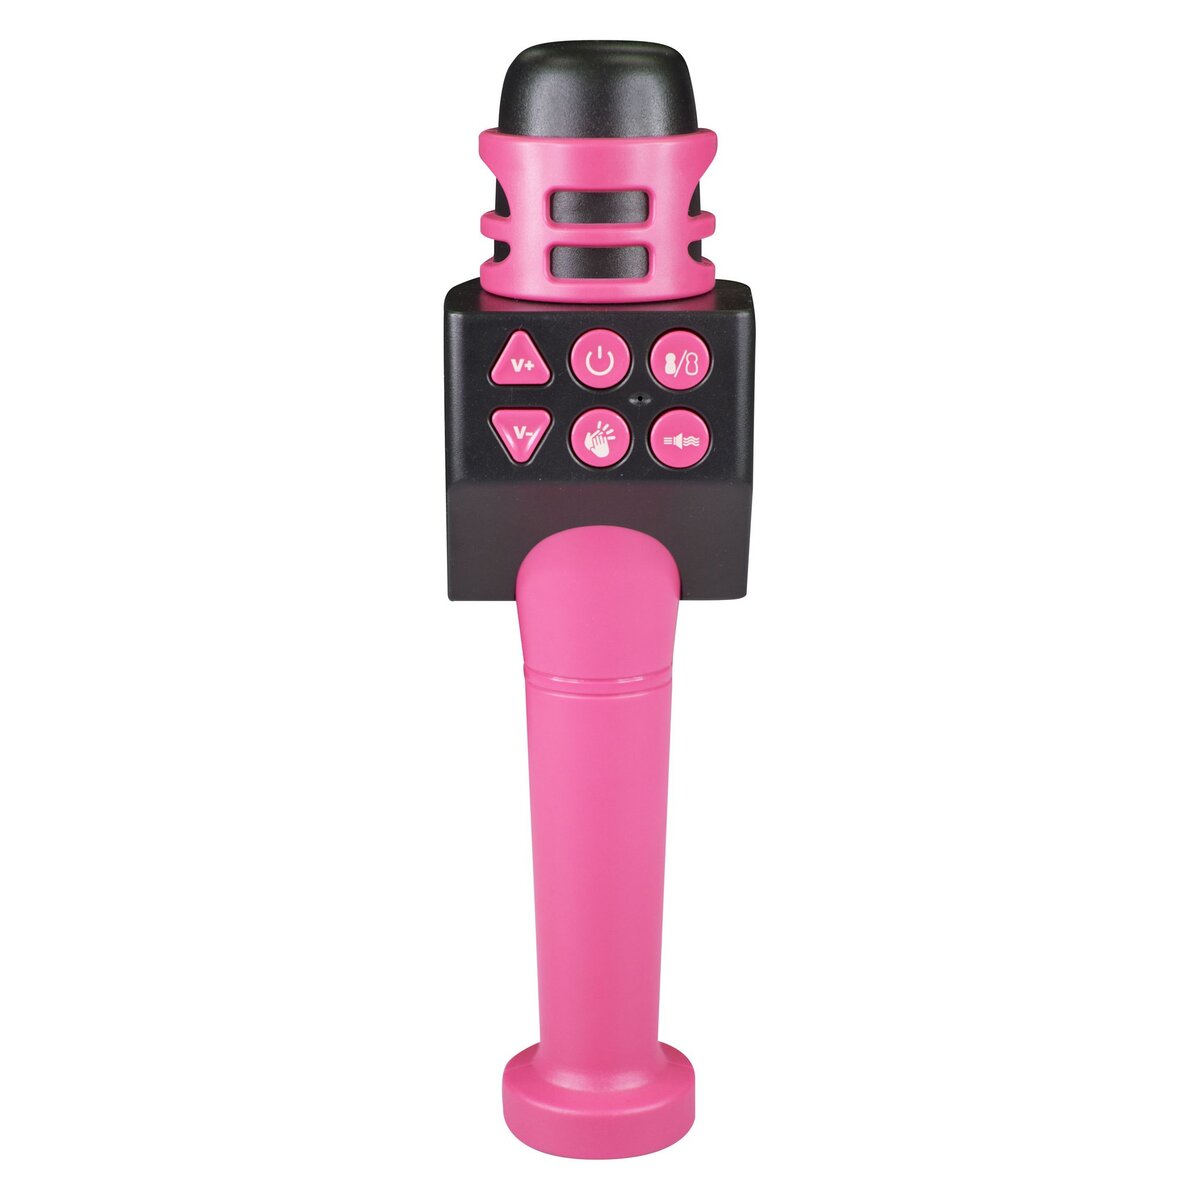 One Two Fun Microphone karaoke rose